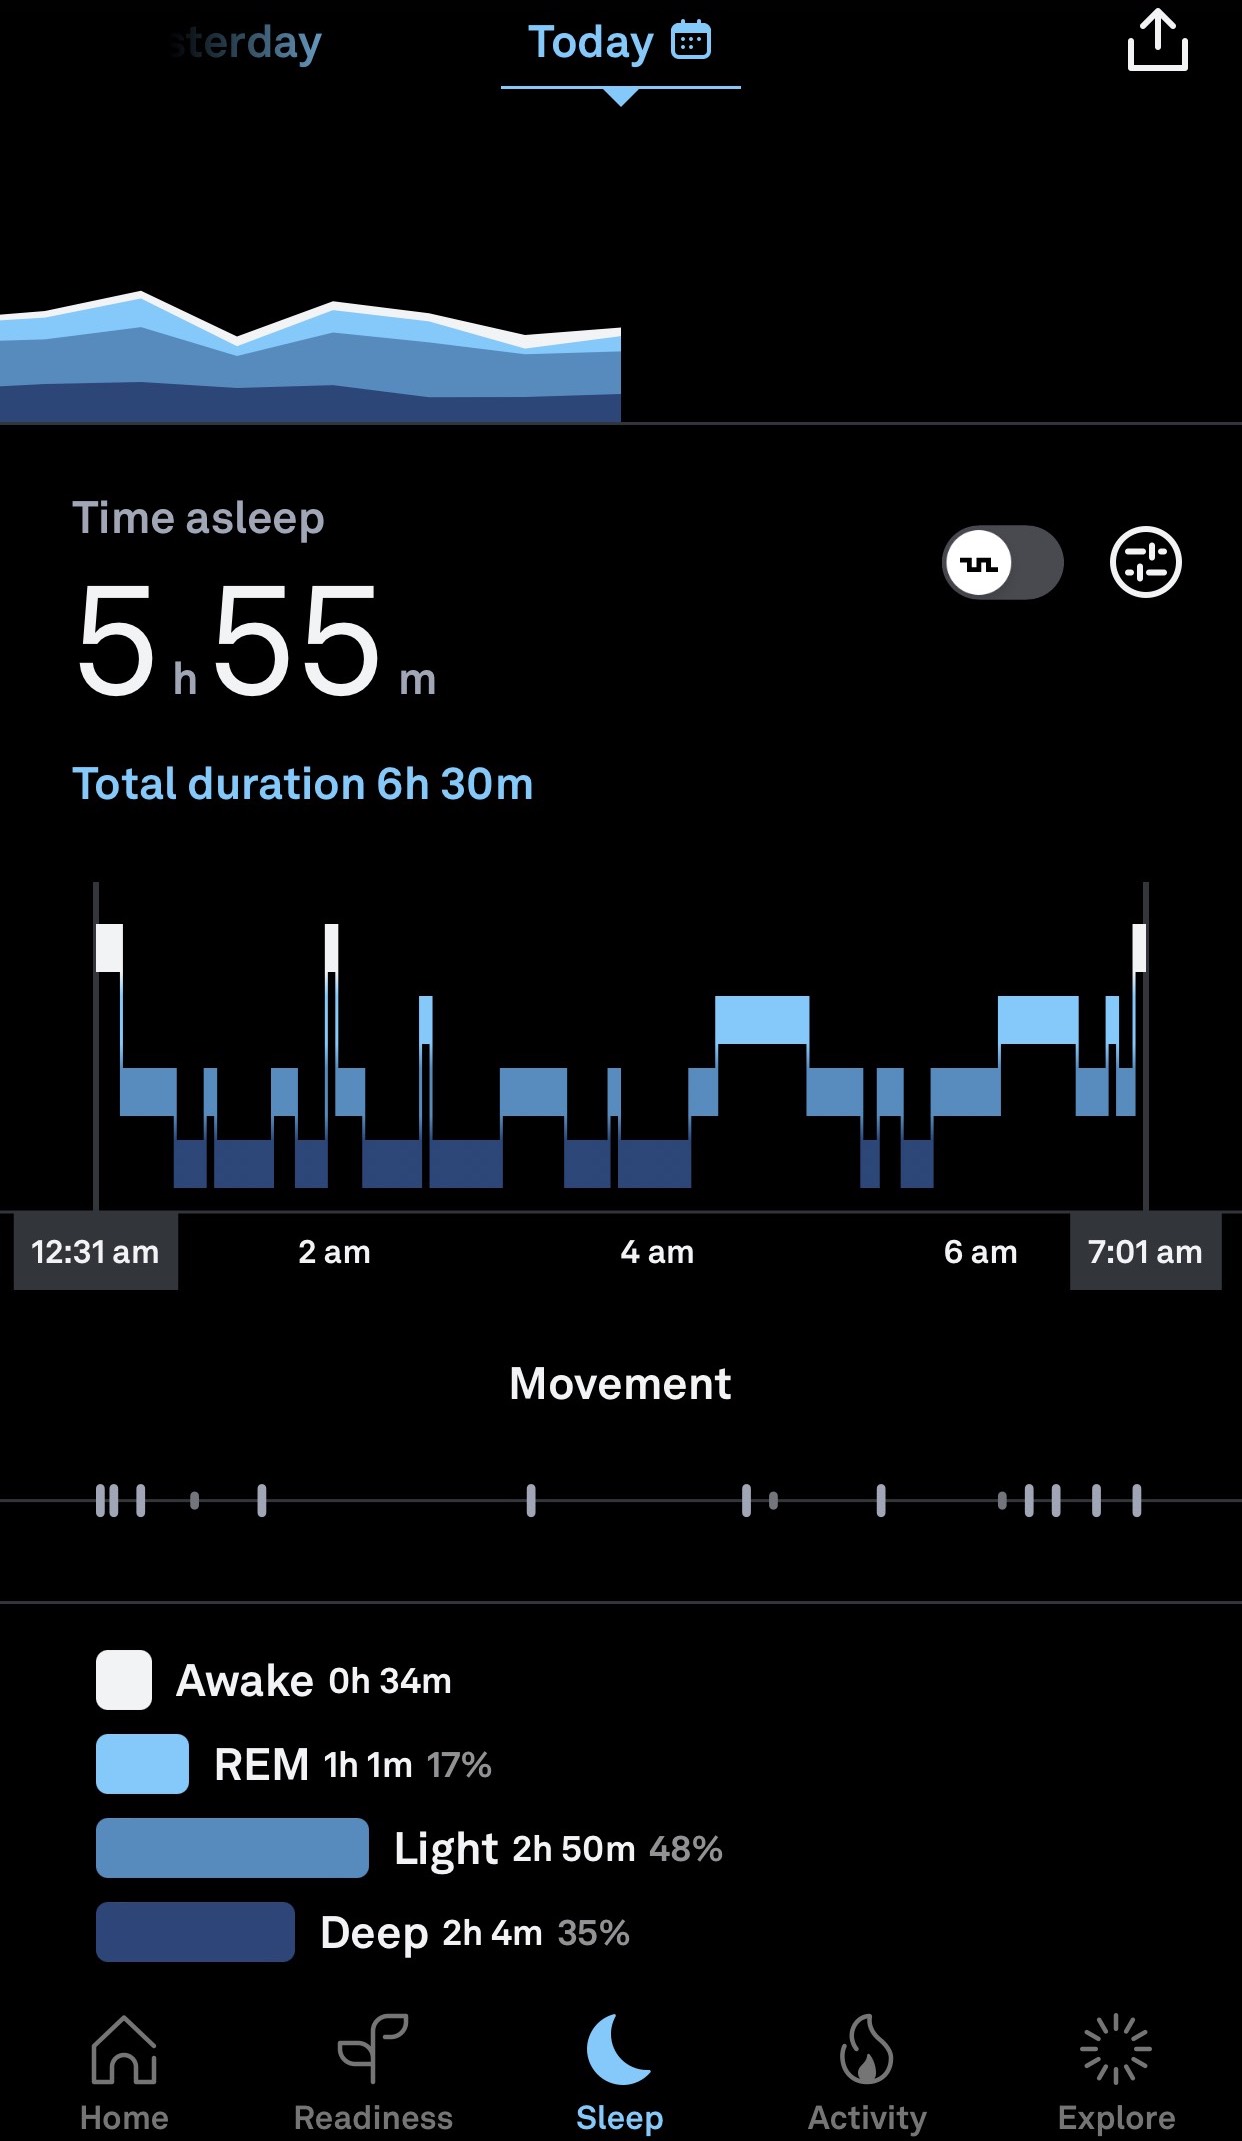 Pantalla Sueño de la aplicación Oura en la que se muestra un hipnograma (gráfico de las fases del sueño). El sueño REM, el sueño ligero y el sueño profundo se representan en varios tonos de azul. El tiempo de vigilia se representa en blanco